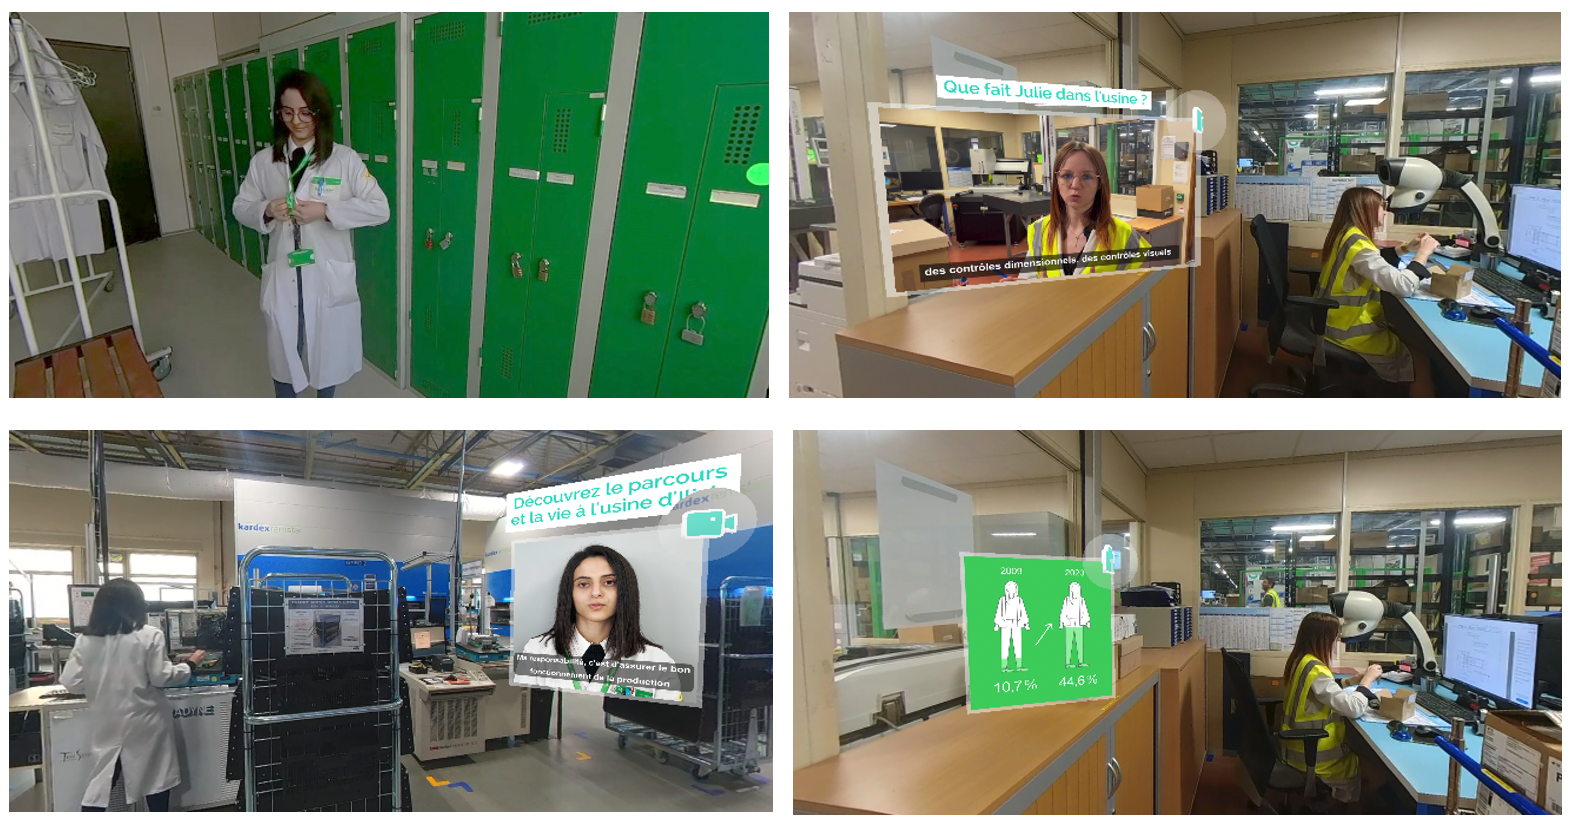 Schneider Electric & Uptale ouvrent les portes des métiers industriels aux femmes à travers la VR